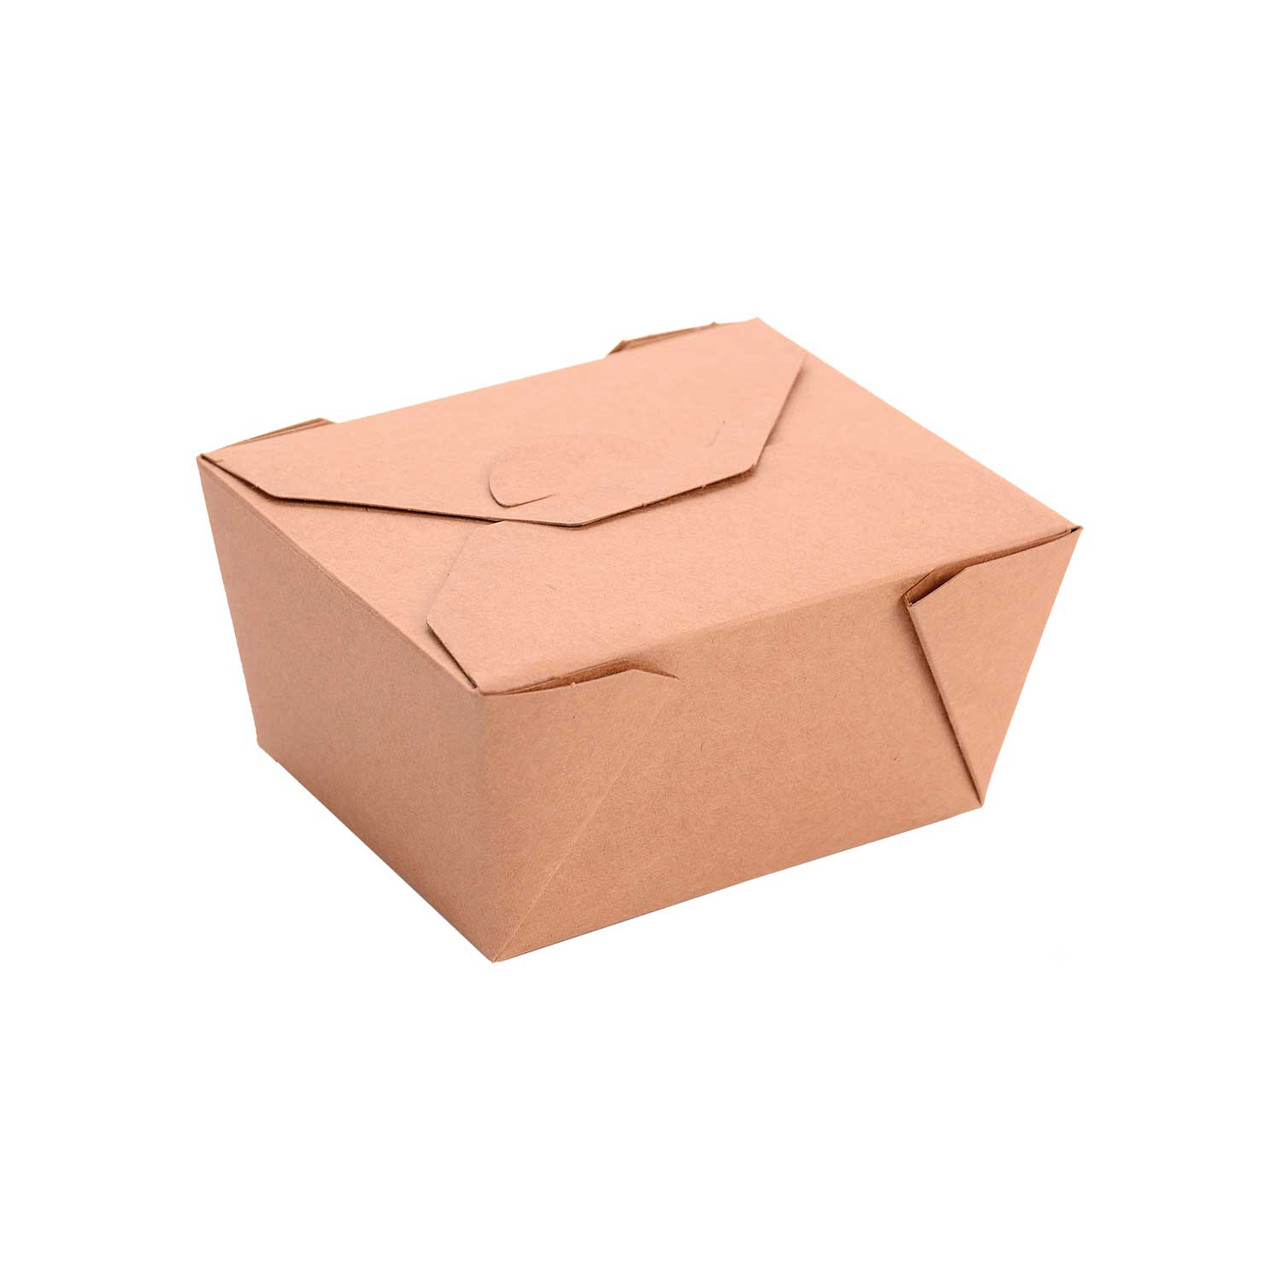 Greenpak Kraft Paper Take Out Boxes, Microwaveable, 5 X 4.5 X 2.5In | 50UN/Unit, 9 Units/Case